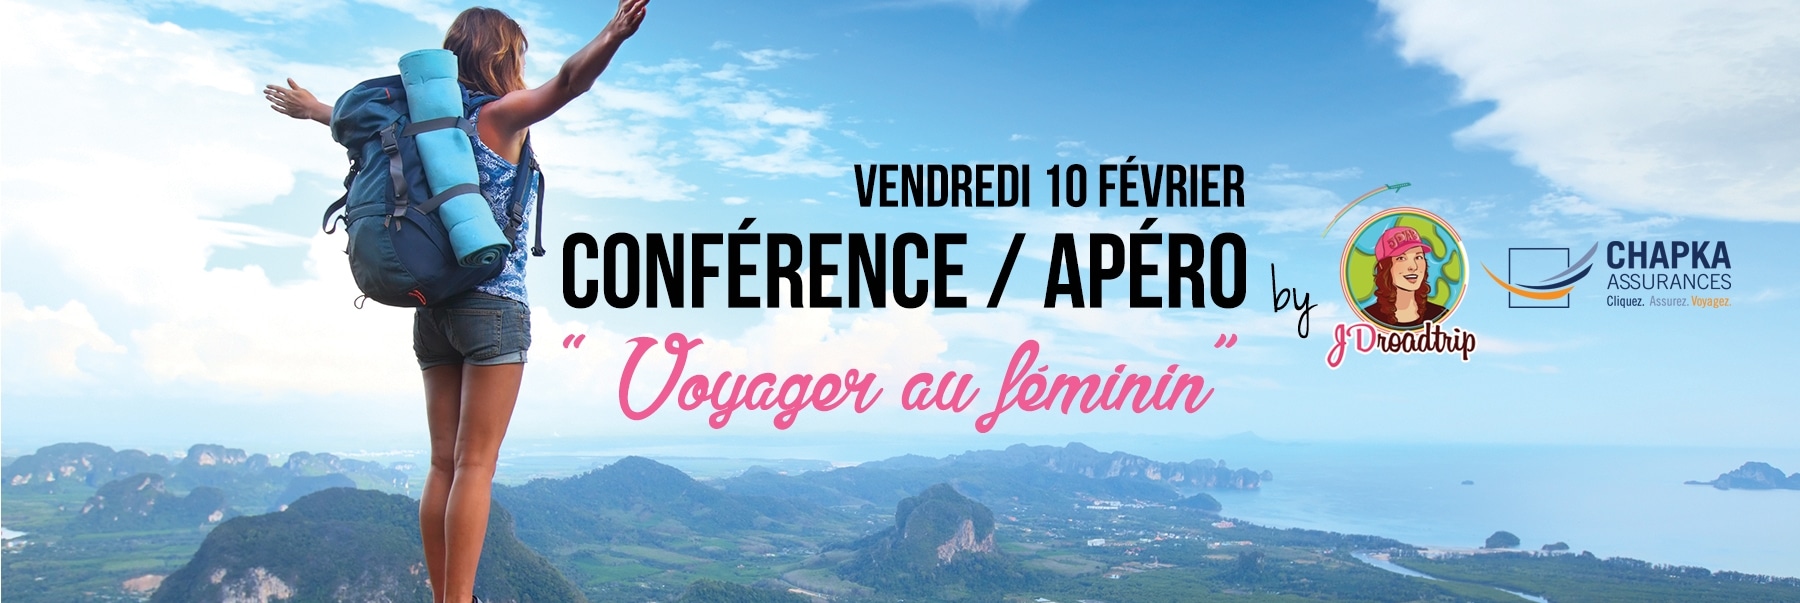 Conférence Voyager au féminin à Paris